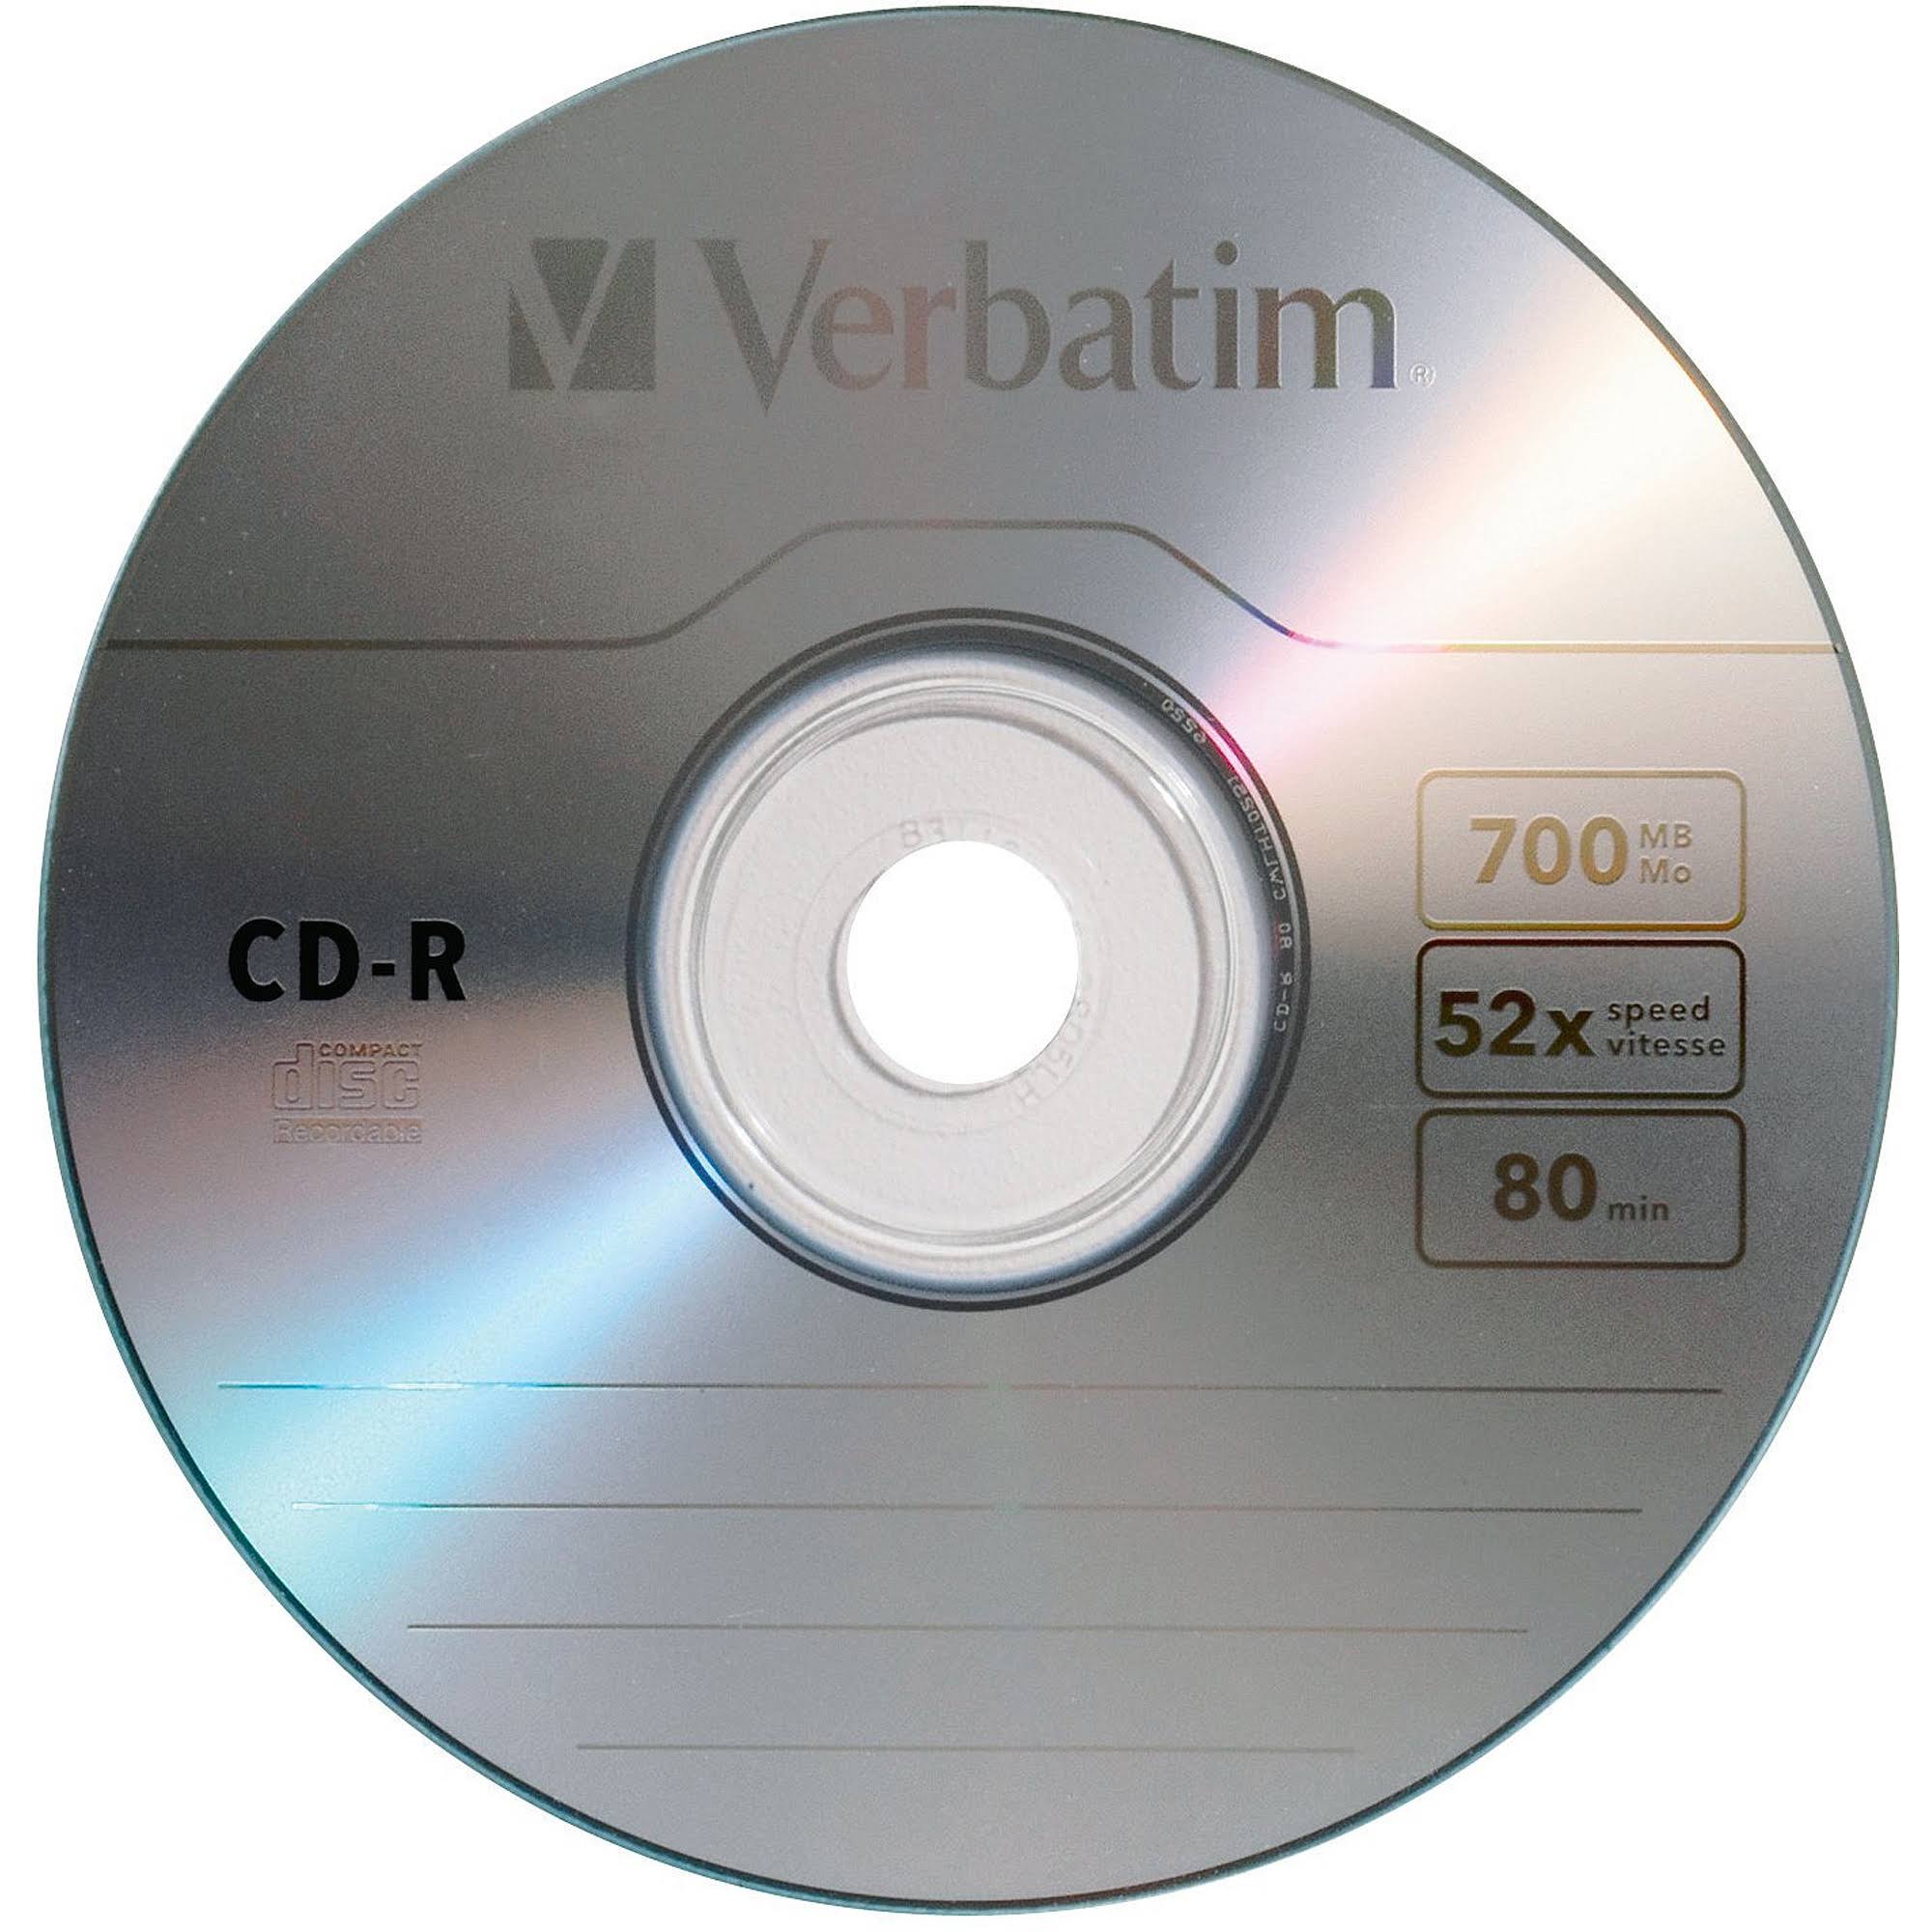 Verbatim CD-R Recordable Disc - Pack of 10, 700mb, 80 Minute